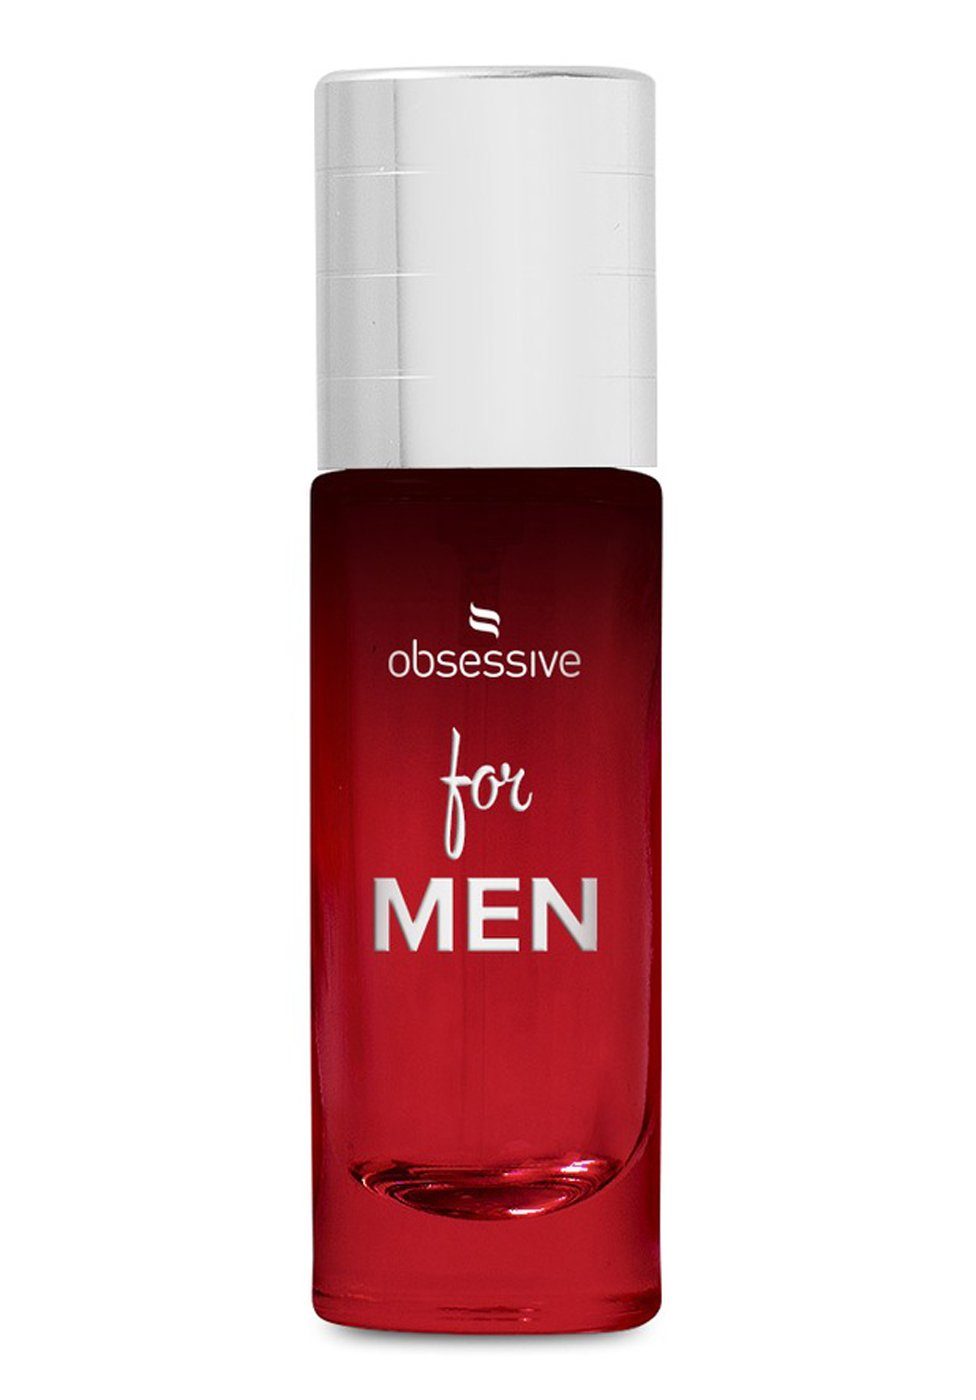 Obsessive Körperspray Parfum mit Pheromonen für den Mann